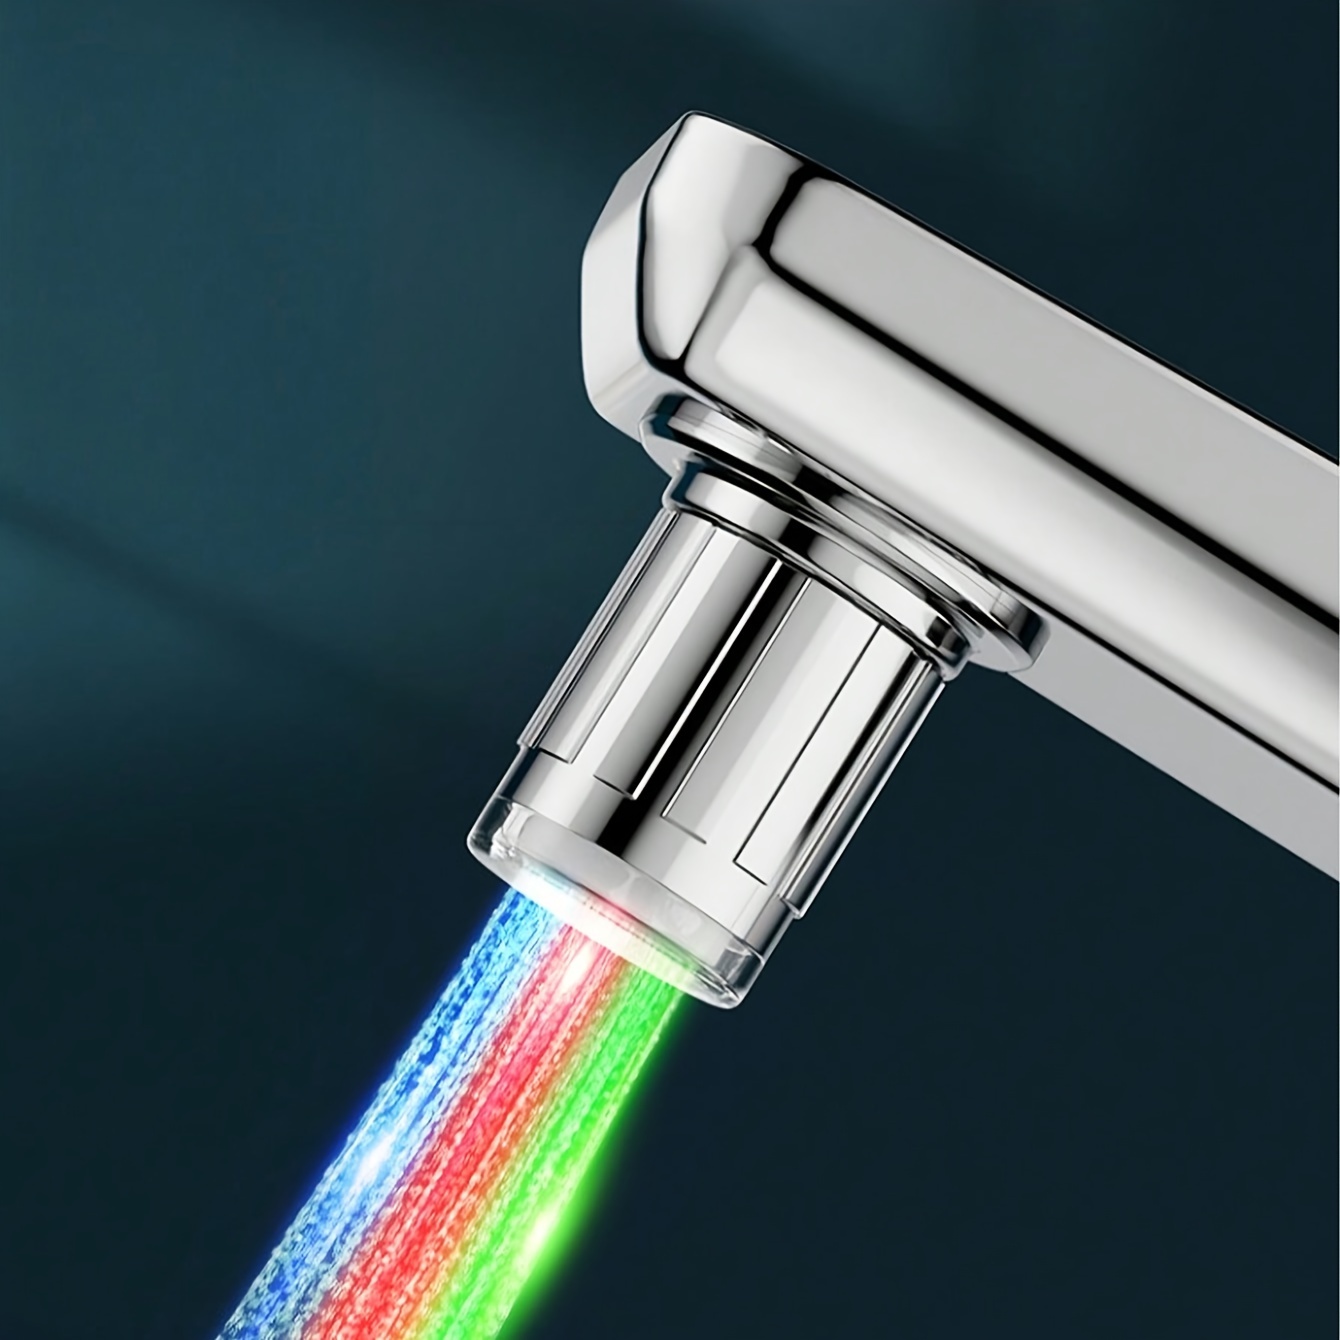 Automatique 3 couleurs changeantes LED lueur robinet robinet buse d'eau  lumineuse tête lumière bec de douche pour cuisine salle de bain bassin